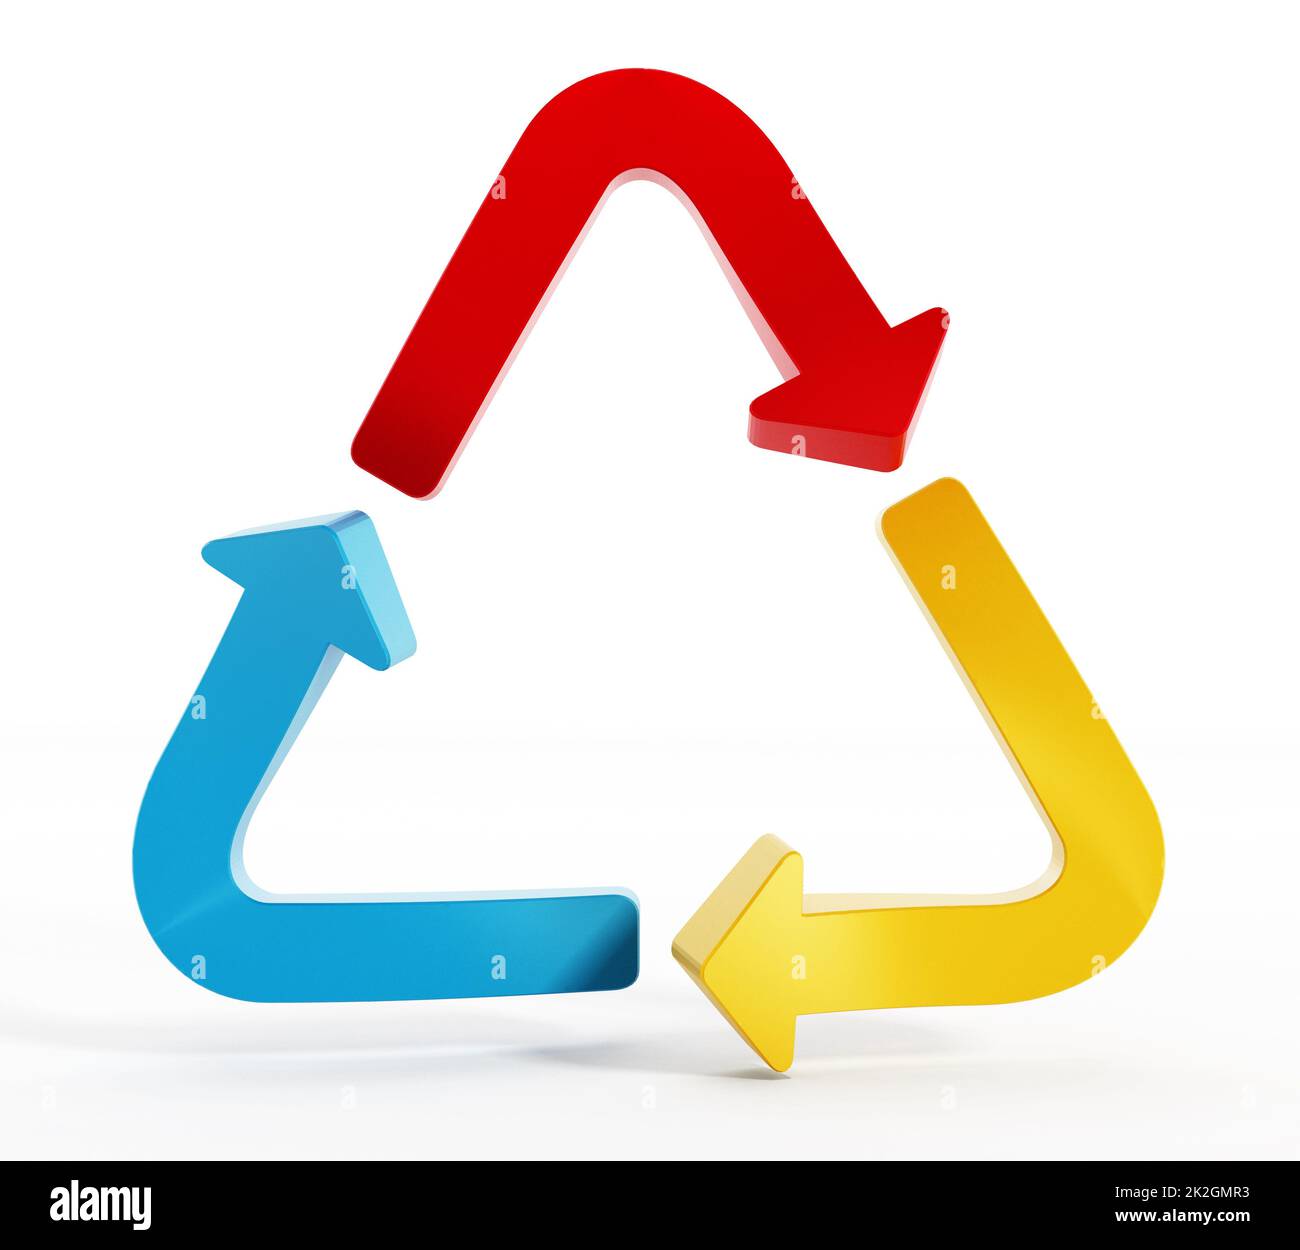 Flèches de couleur formant le symbole de recyclage Banque D'Images